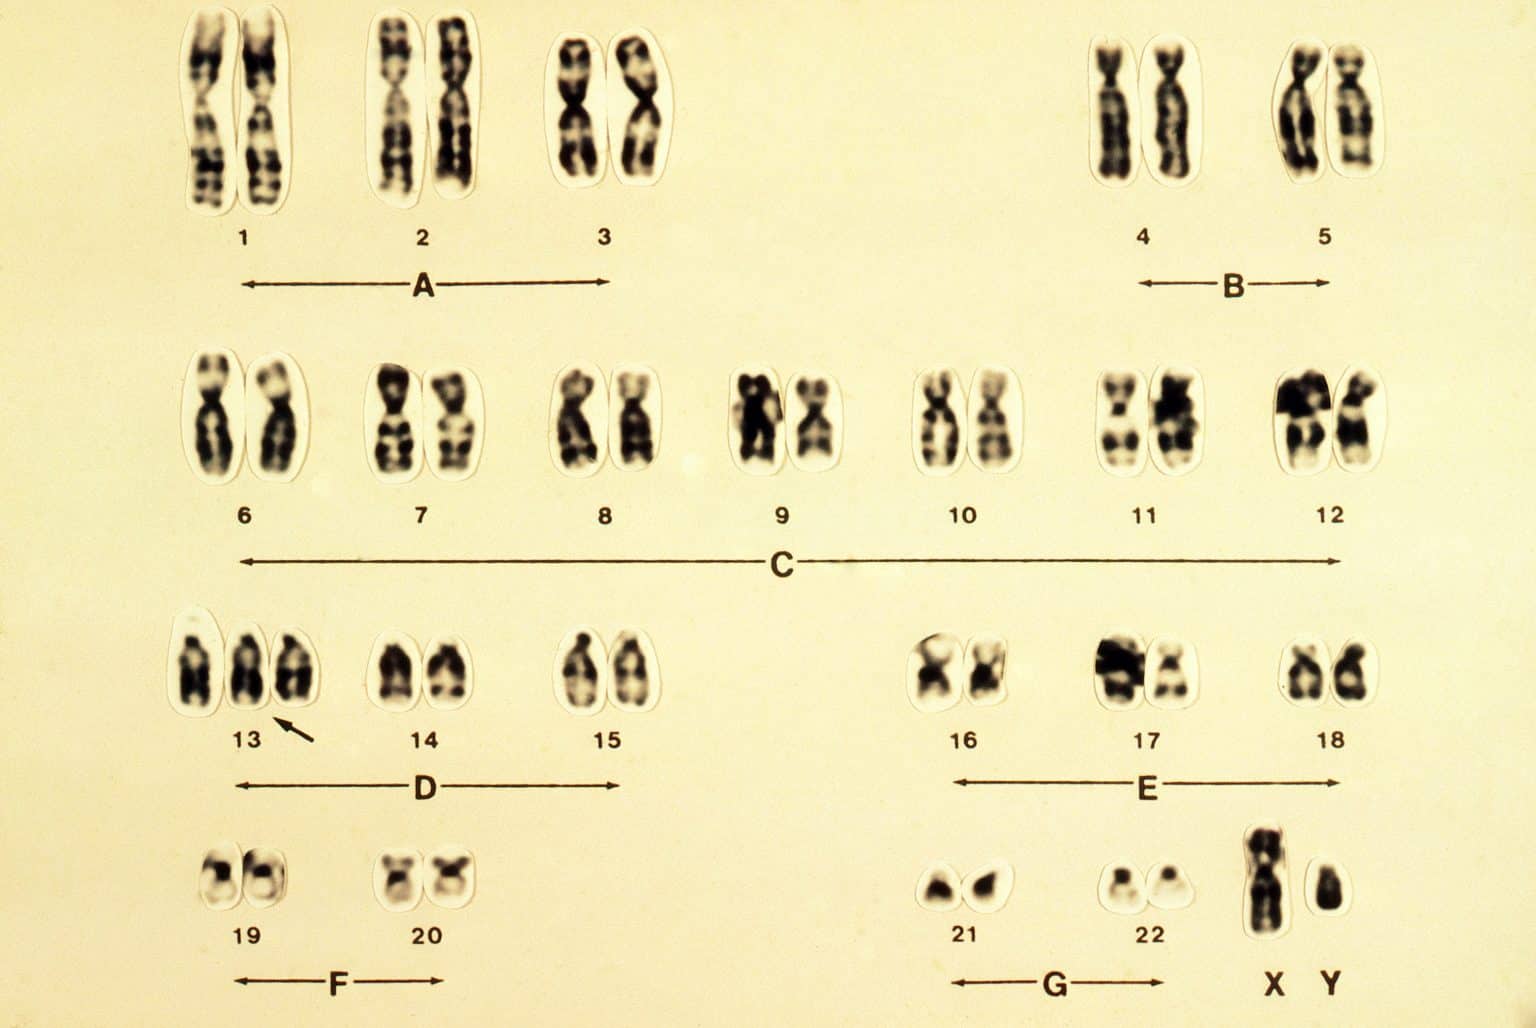 Пересадка хромосом. Синдром Патау трисомия по 13 хромосоме кариотип. Трисомия 13 хромосомы кариотип. 13 Хромосома синдром Патау.